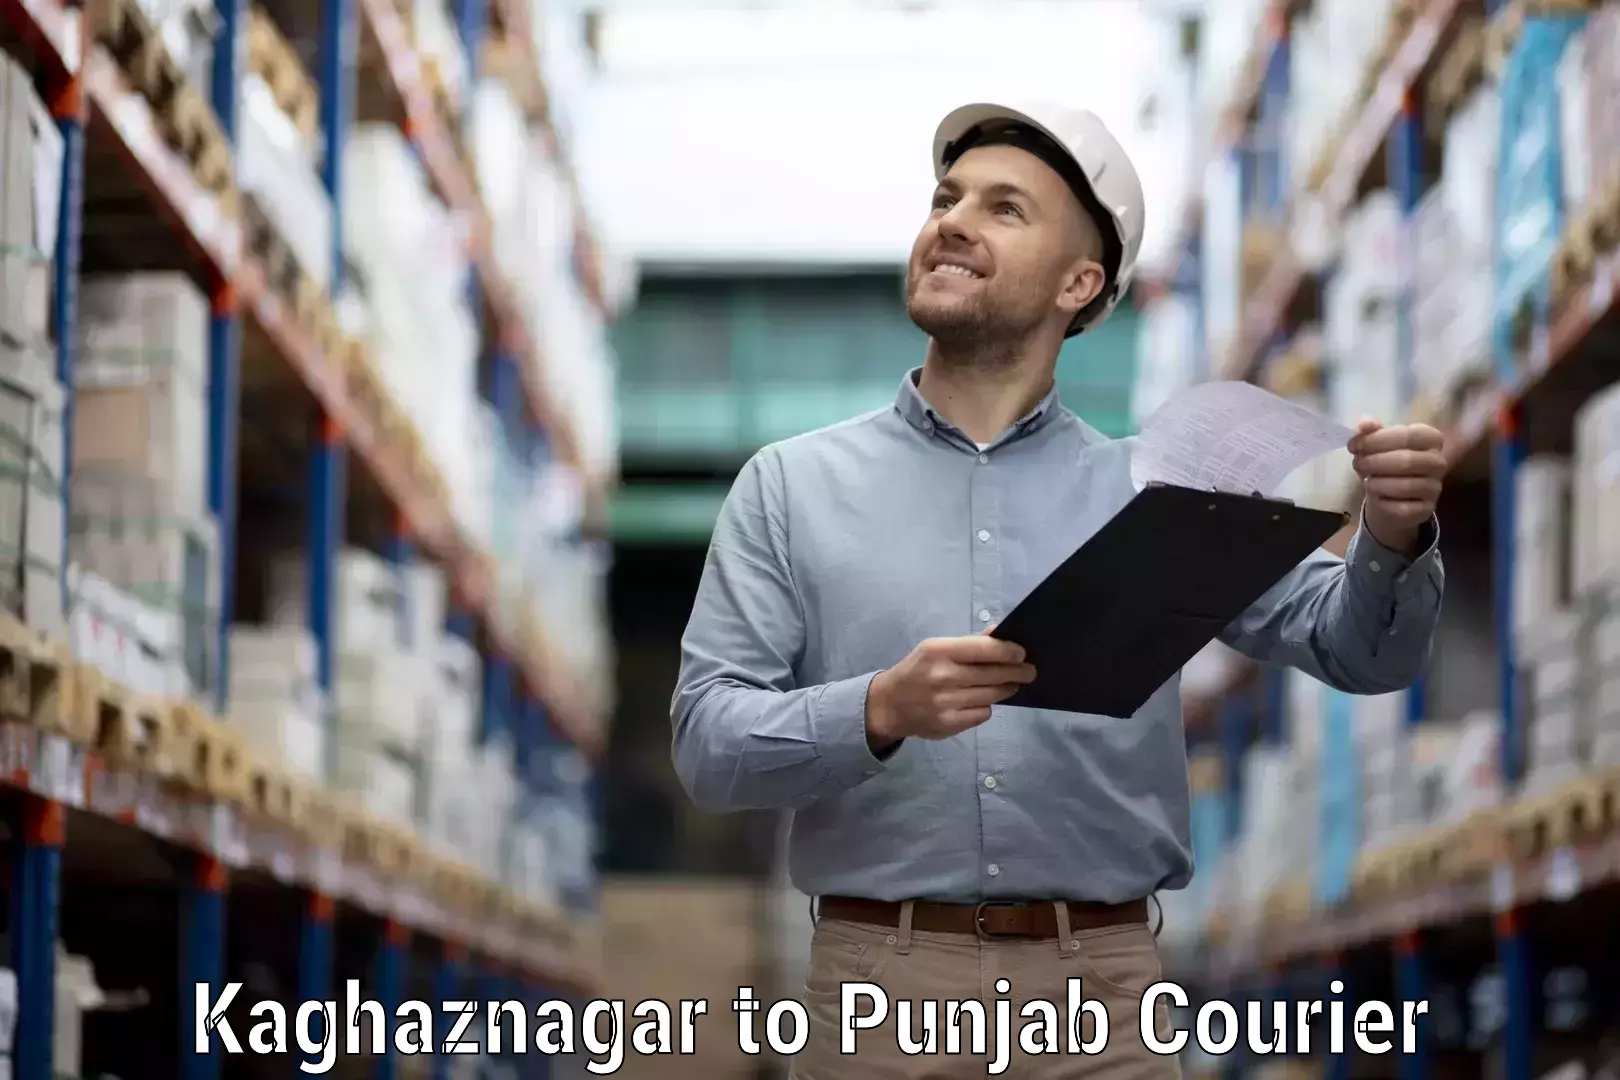 Efficient shipping operations Kaghaznagar to Begowal